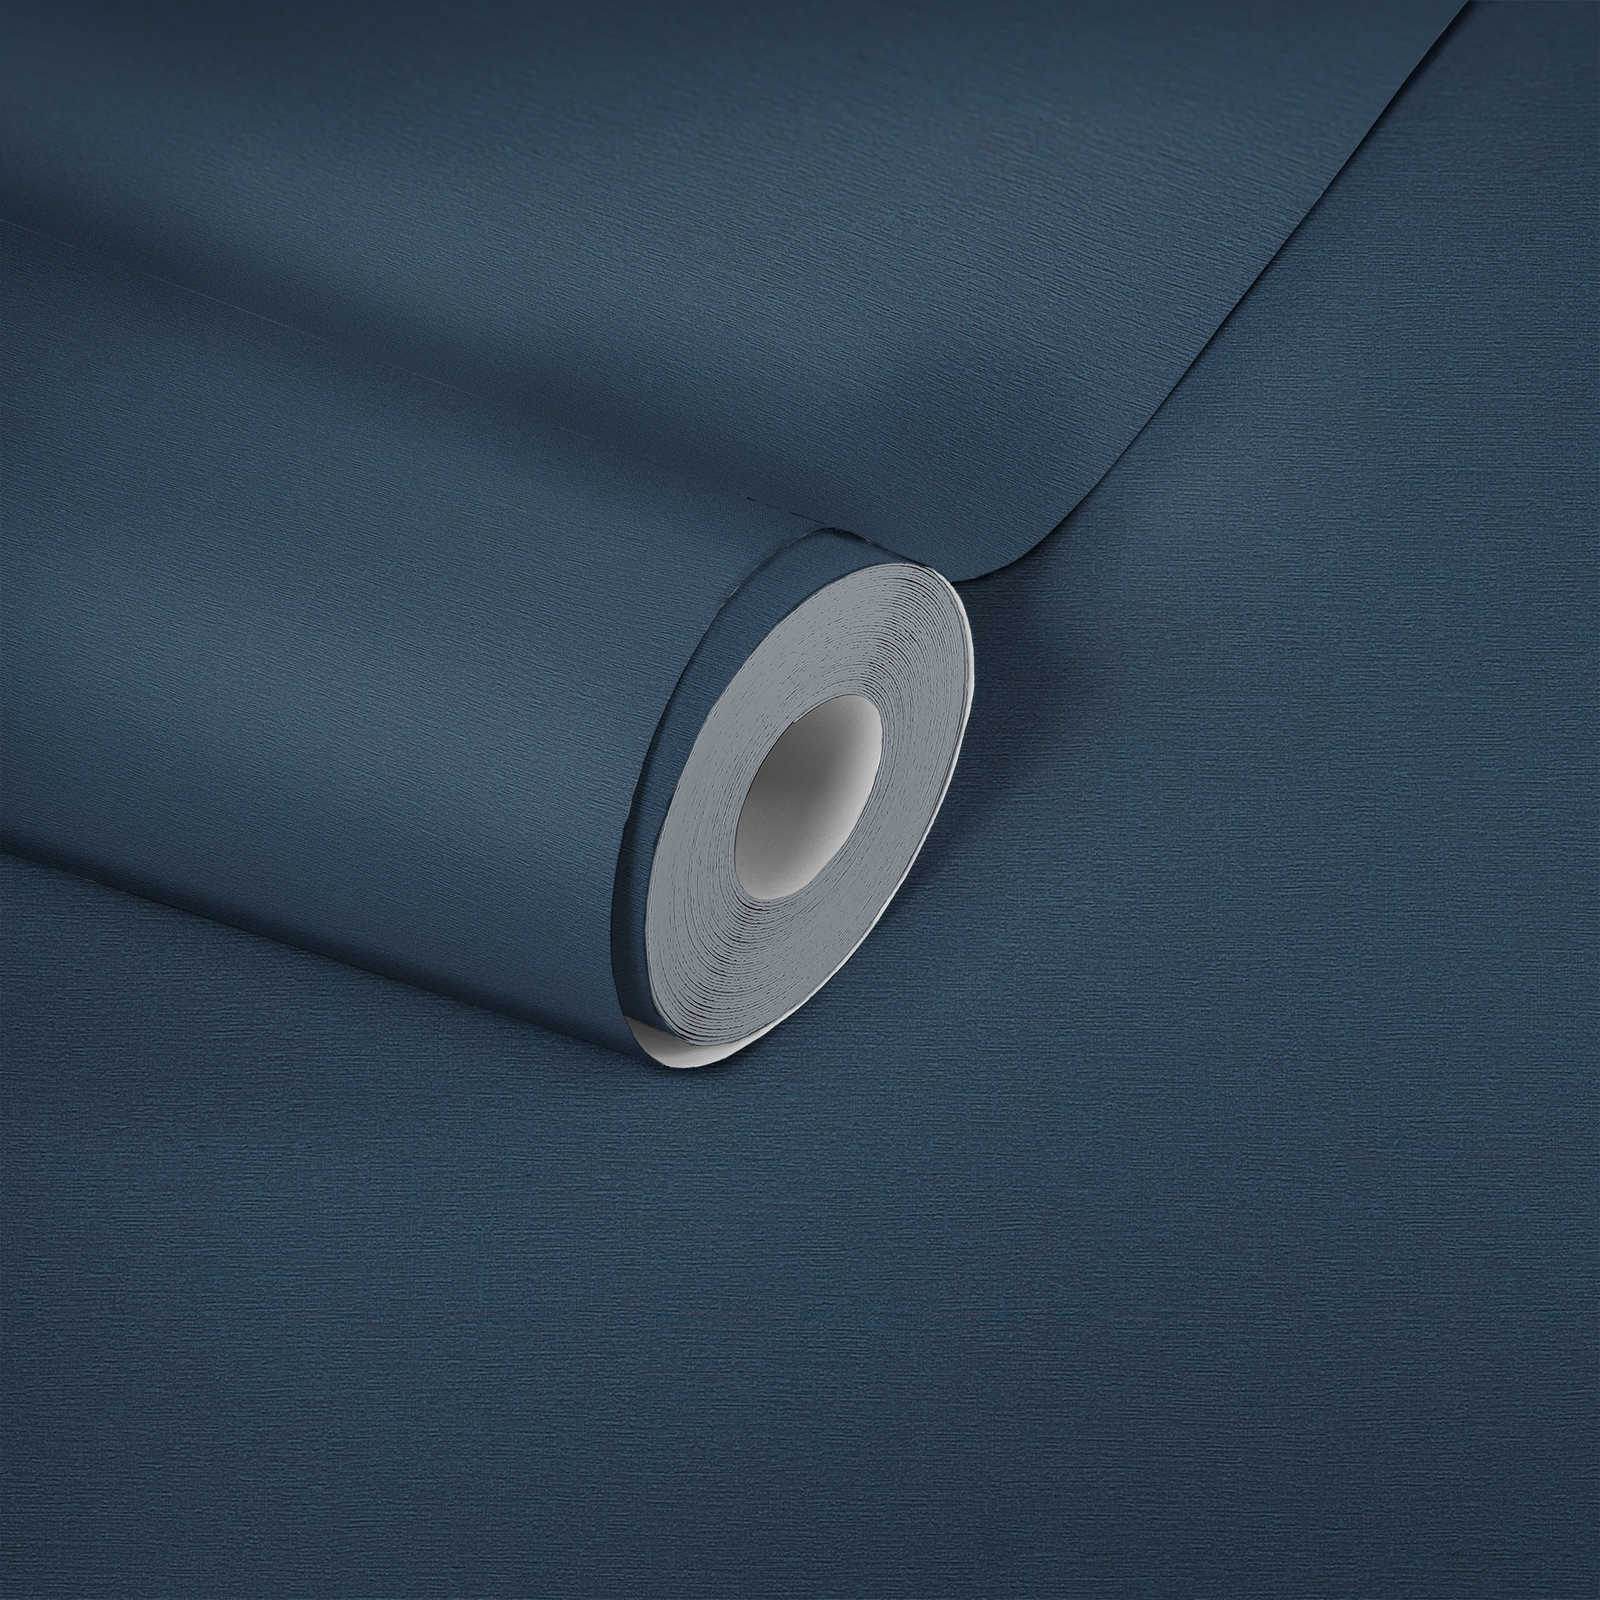             Dark wallpaper linen structure, plain & satin - blue
        